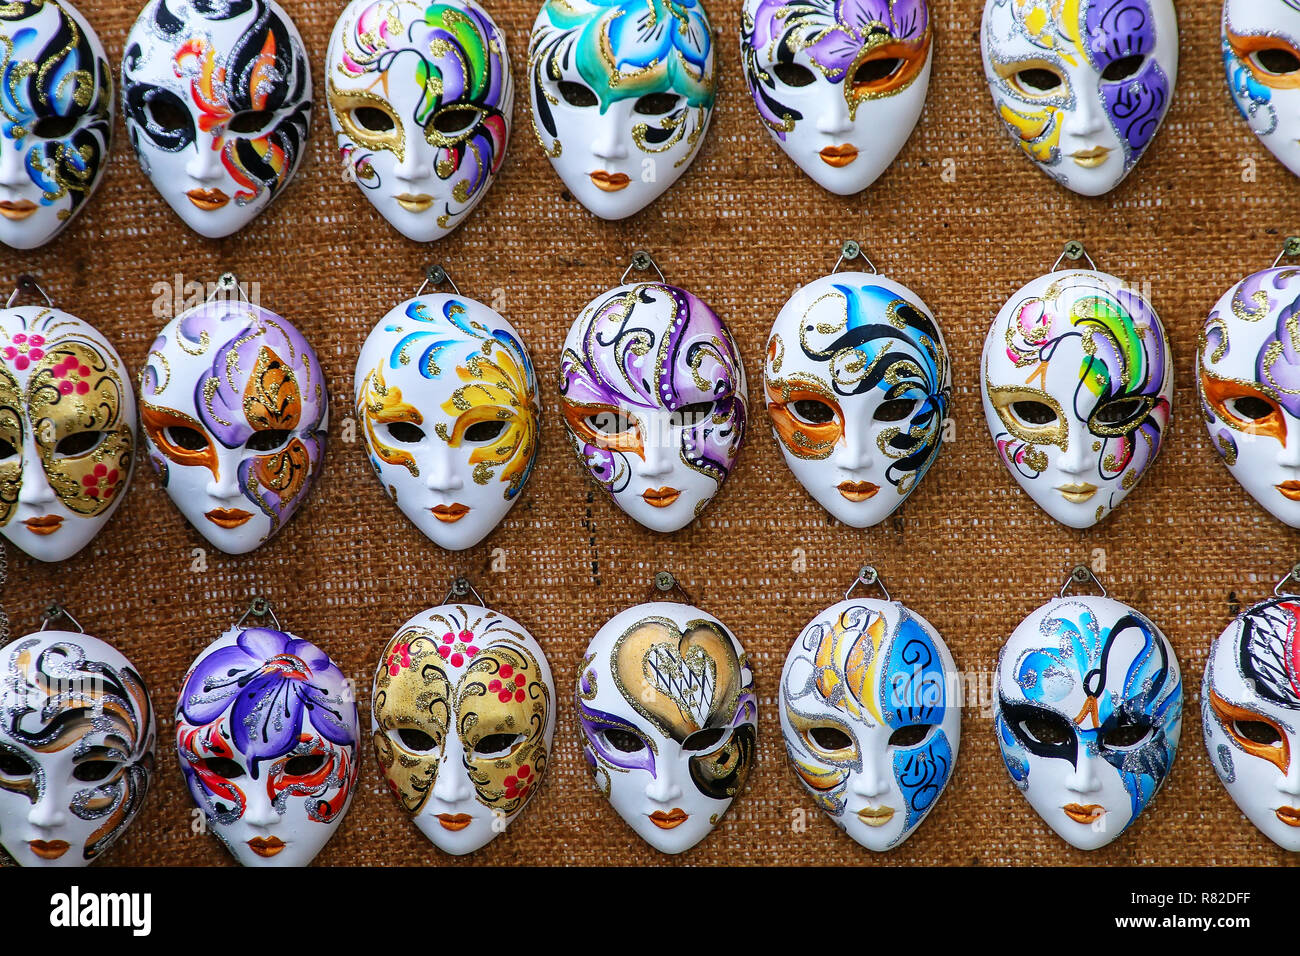 Afficher des masques à un magasin de souvenirs dans les rues de Venise, Italie. Masques ont toujours été une caractéristique importante de la célèbre carnaval vénitien. Banque D'Images